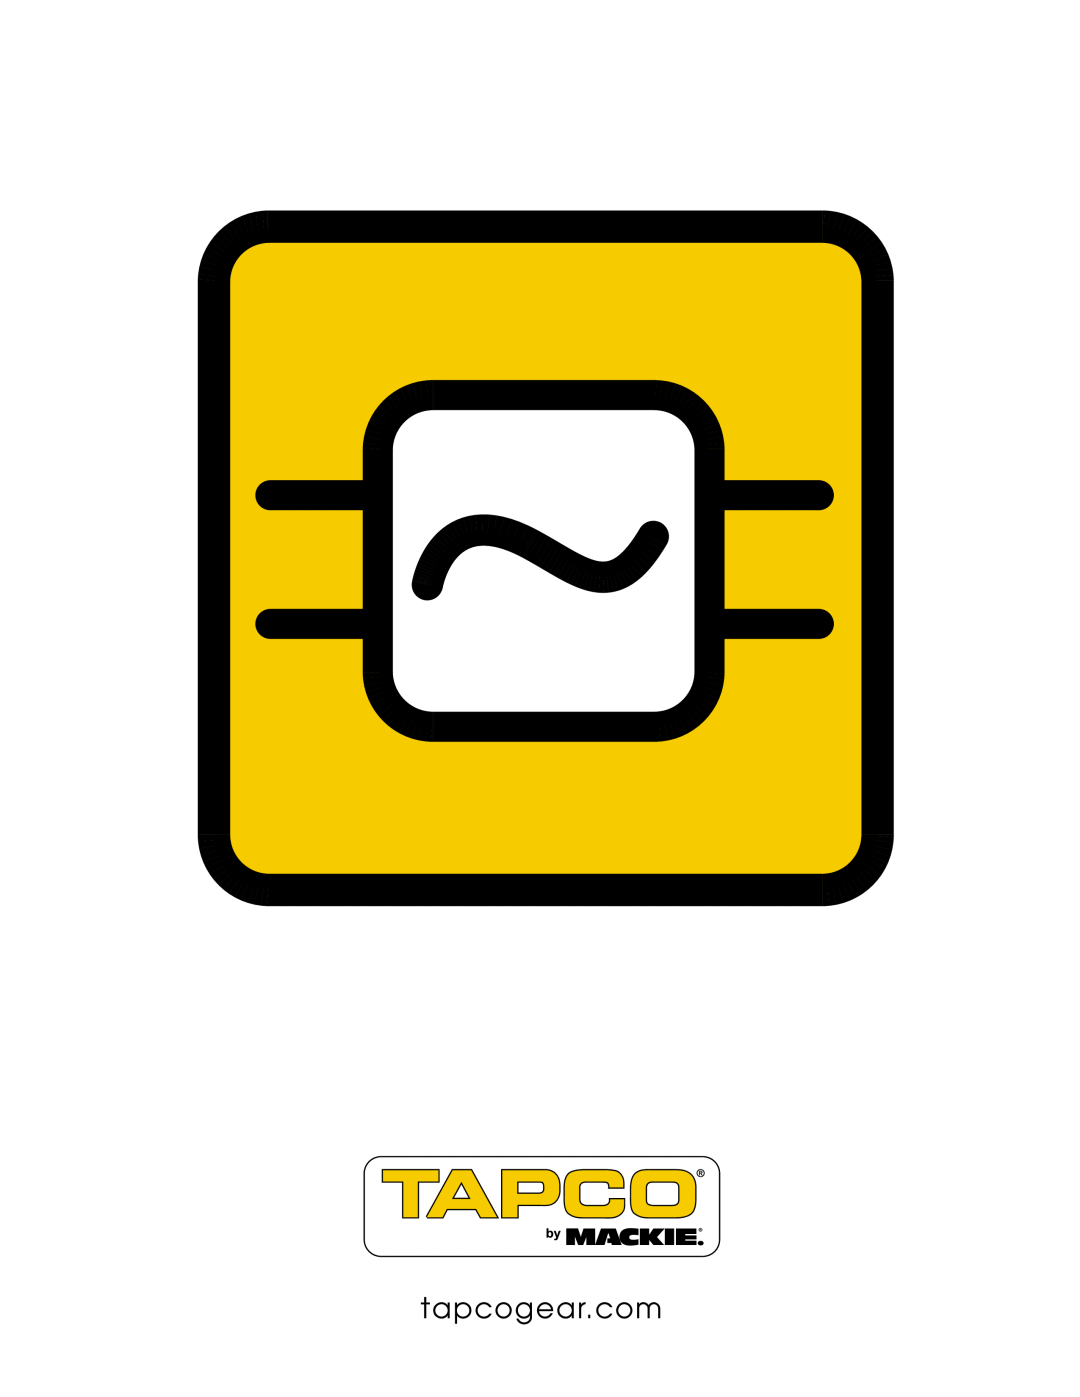 Tapco T-231 user service 